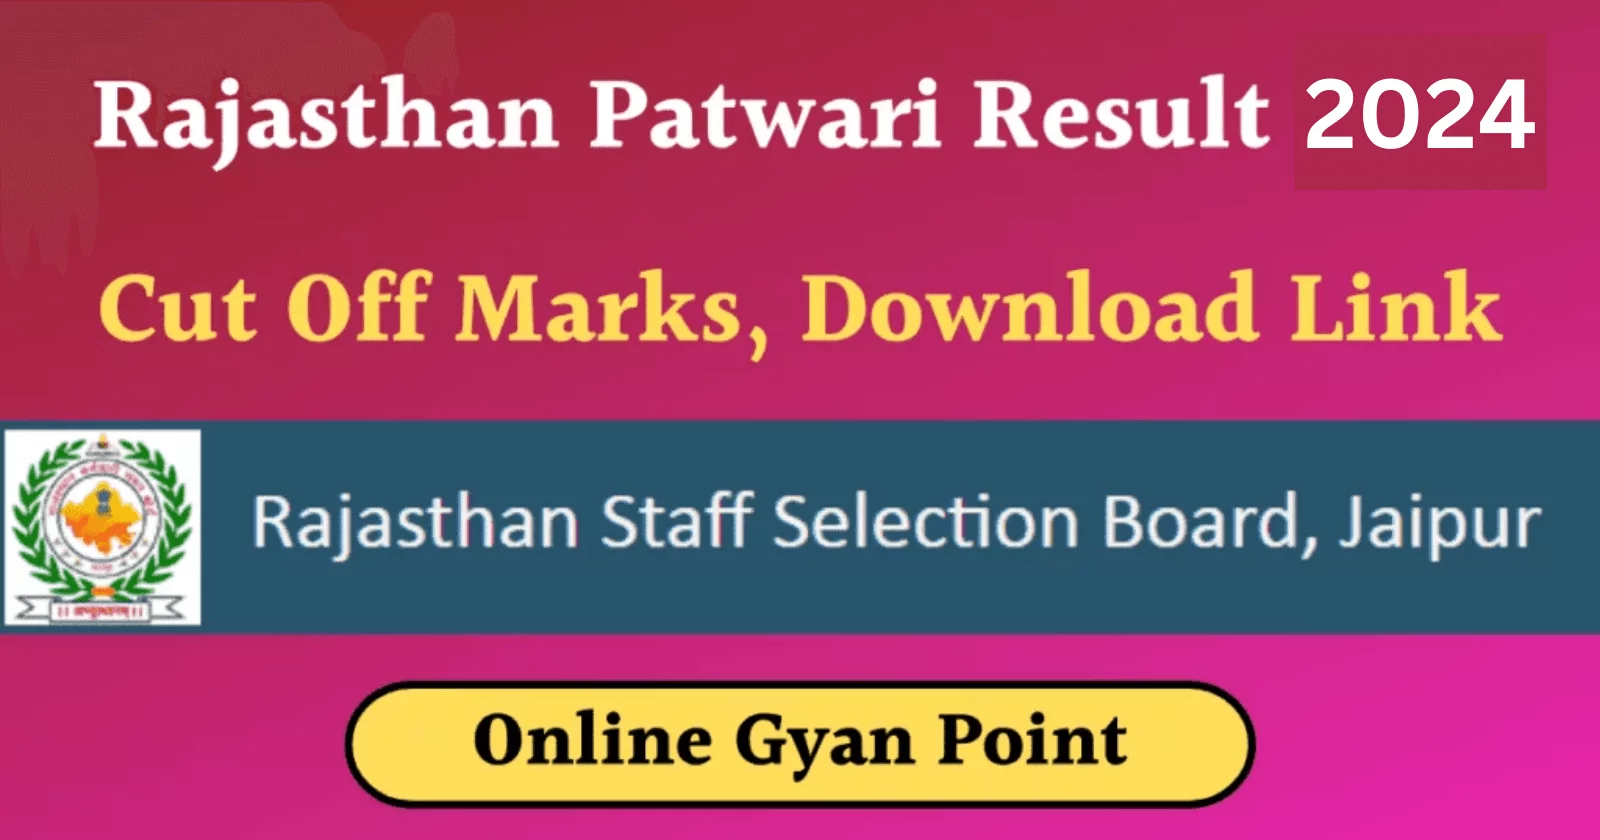 Rajasthan Patwari Result 2024